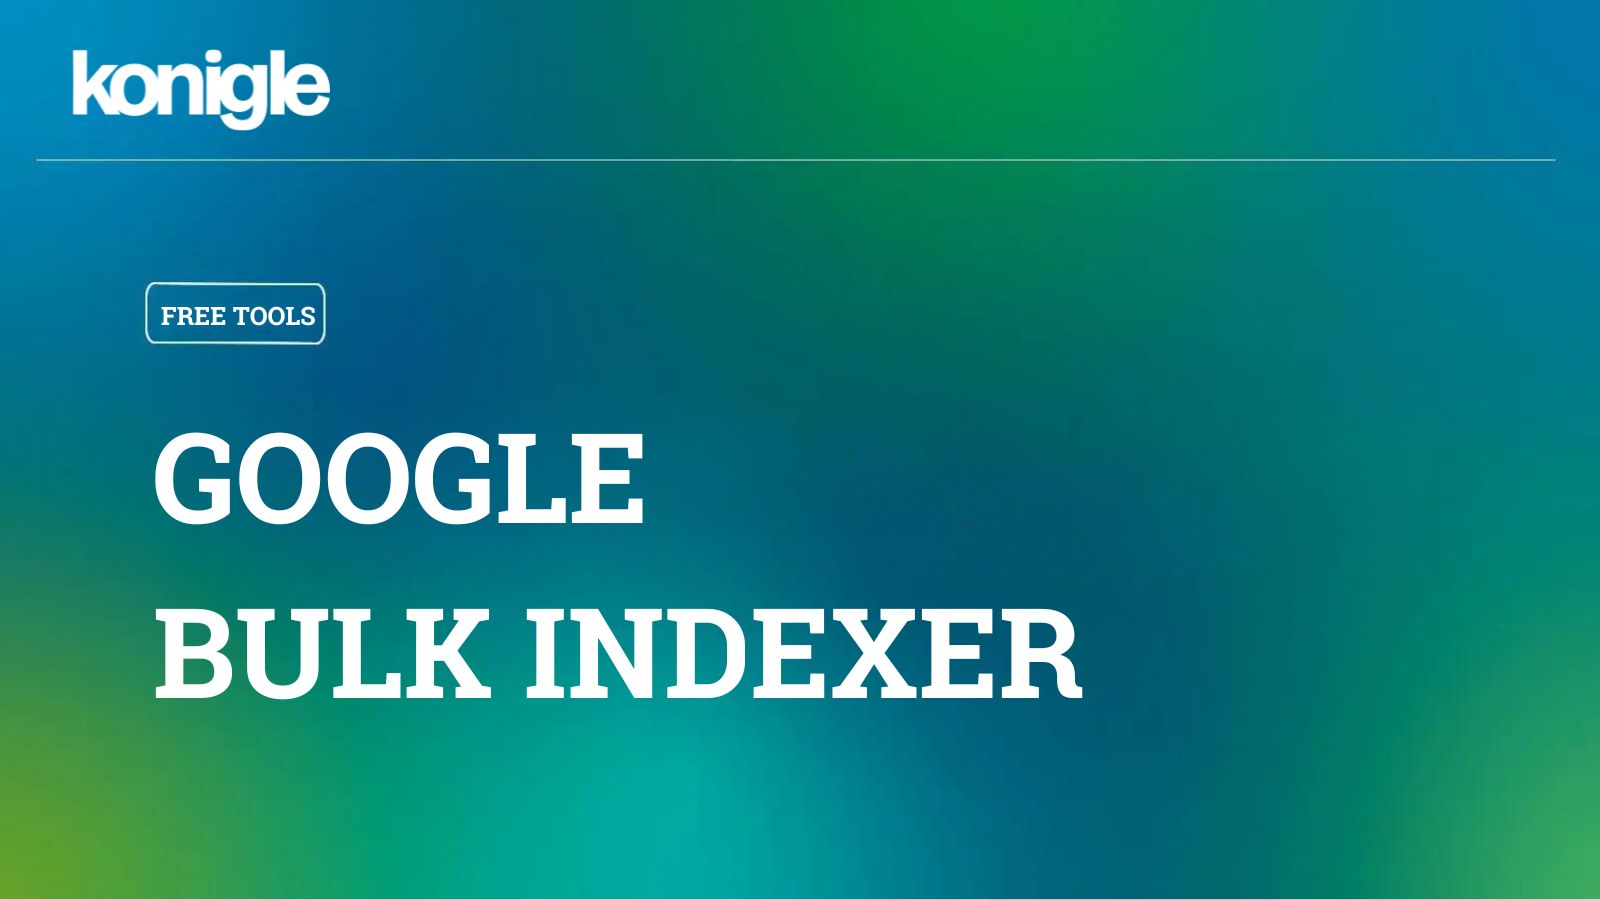 Google Bulk Indexer